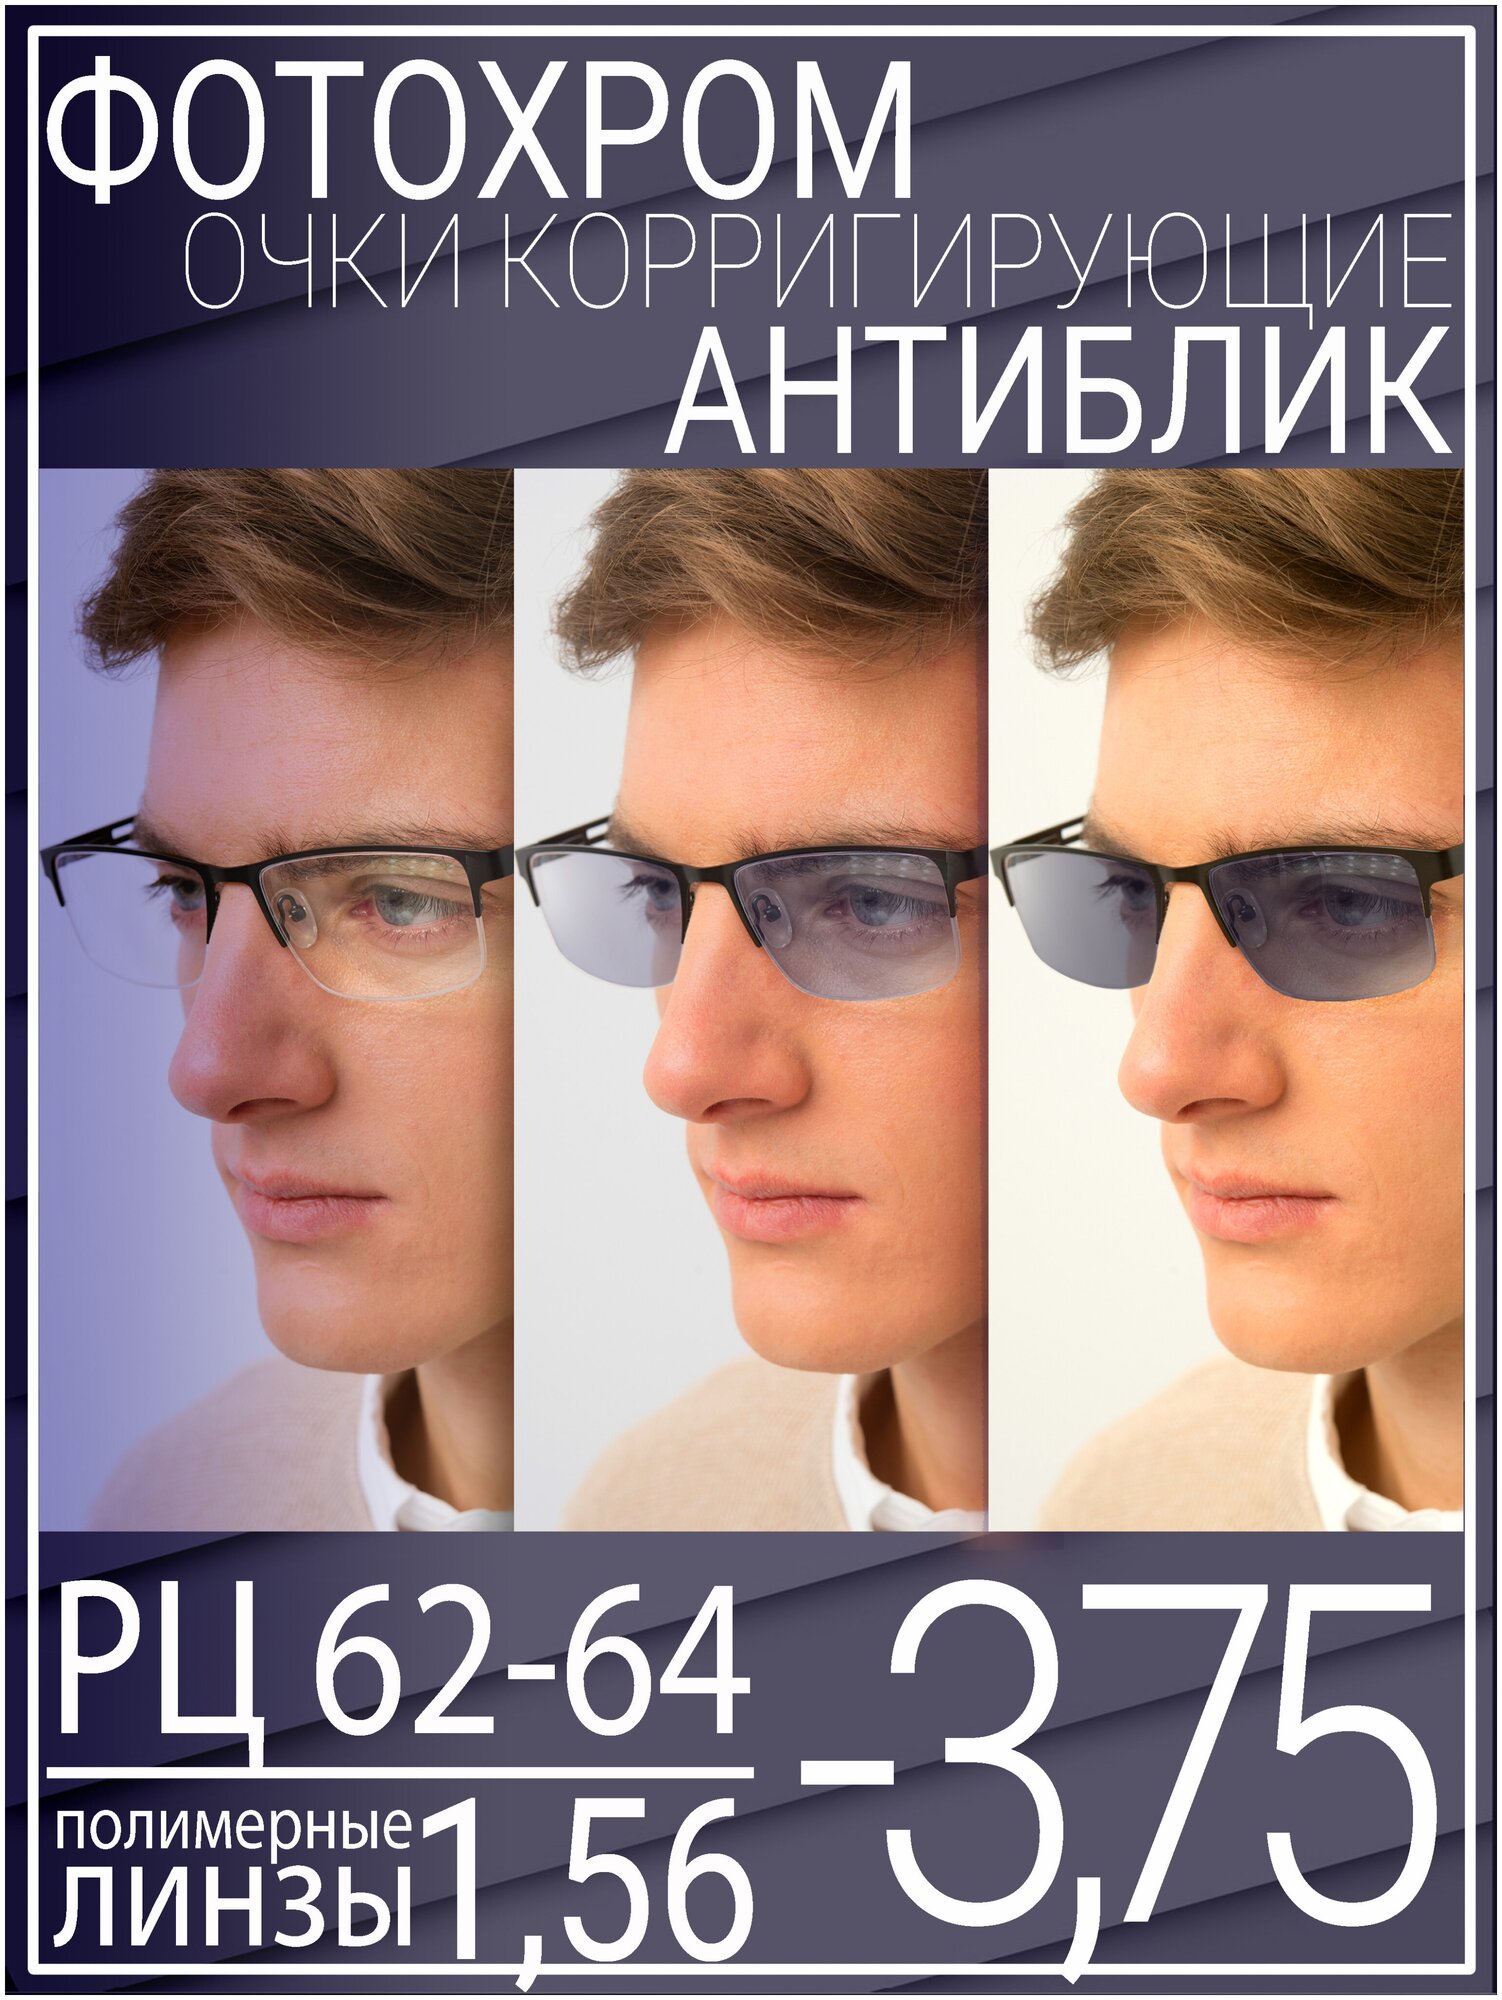 Готовые очки для зрения с фотохромной линзой -3.75 РЦ 62-64 / Очки корригирующие мужские